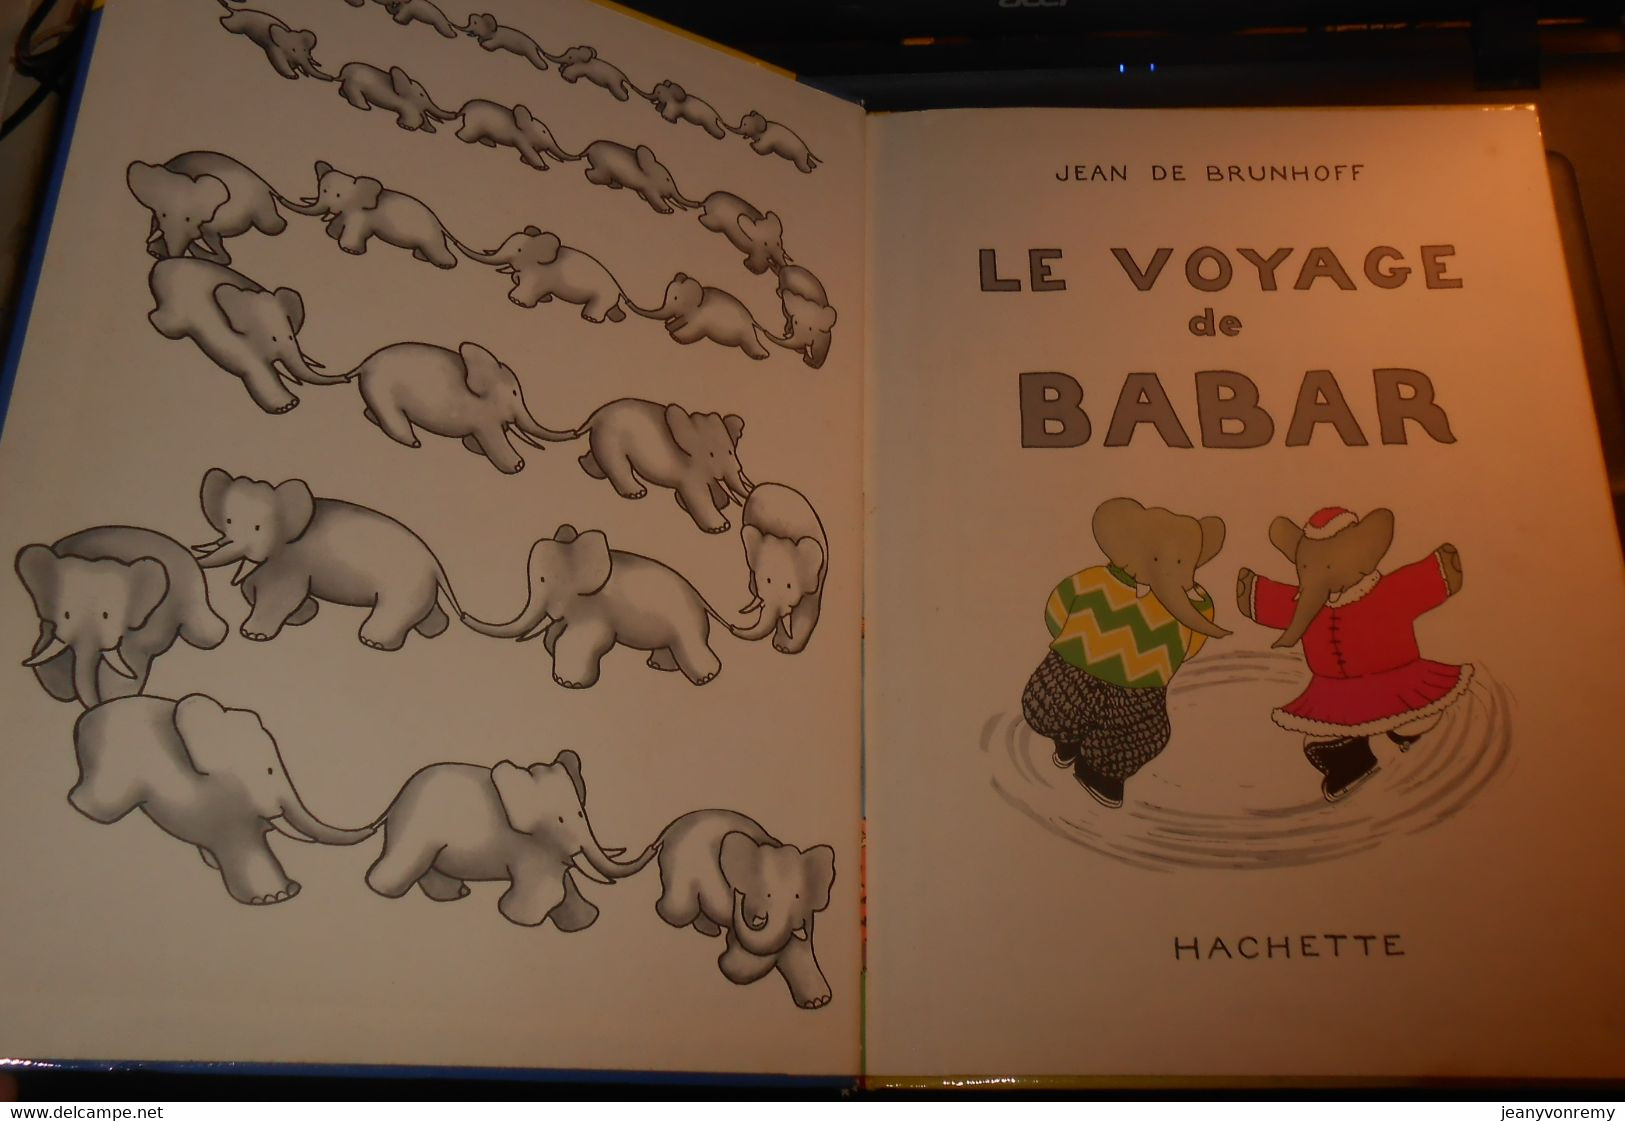 Le Voyage De Babar. Jean De Brunhoff. 1971 - Hachette